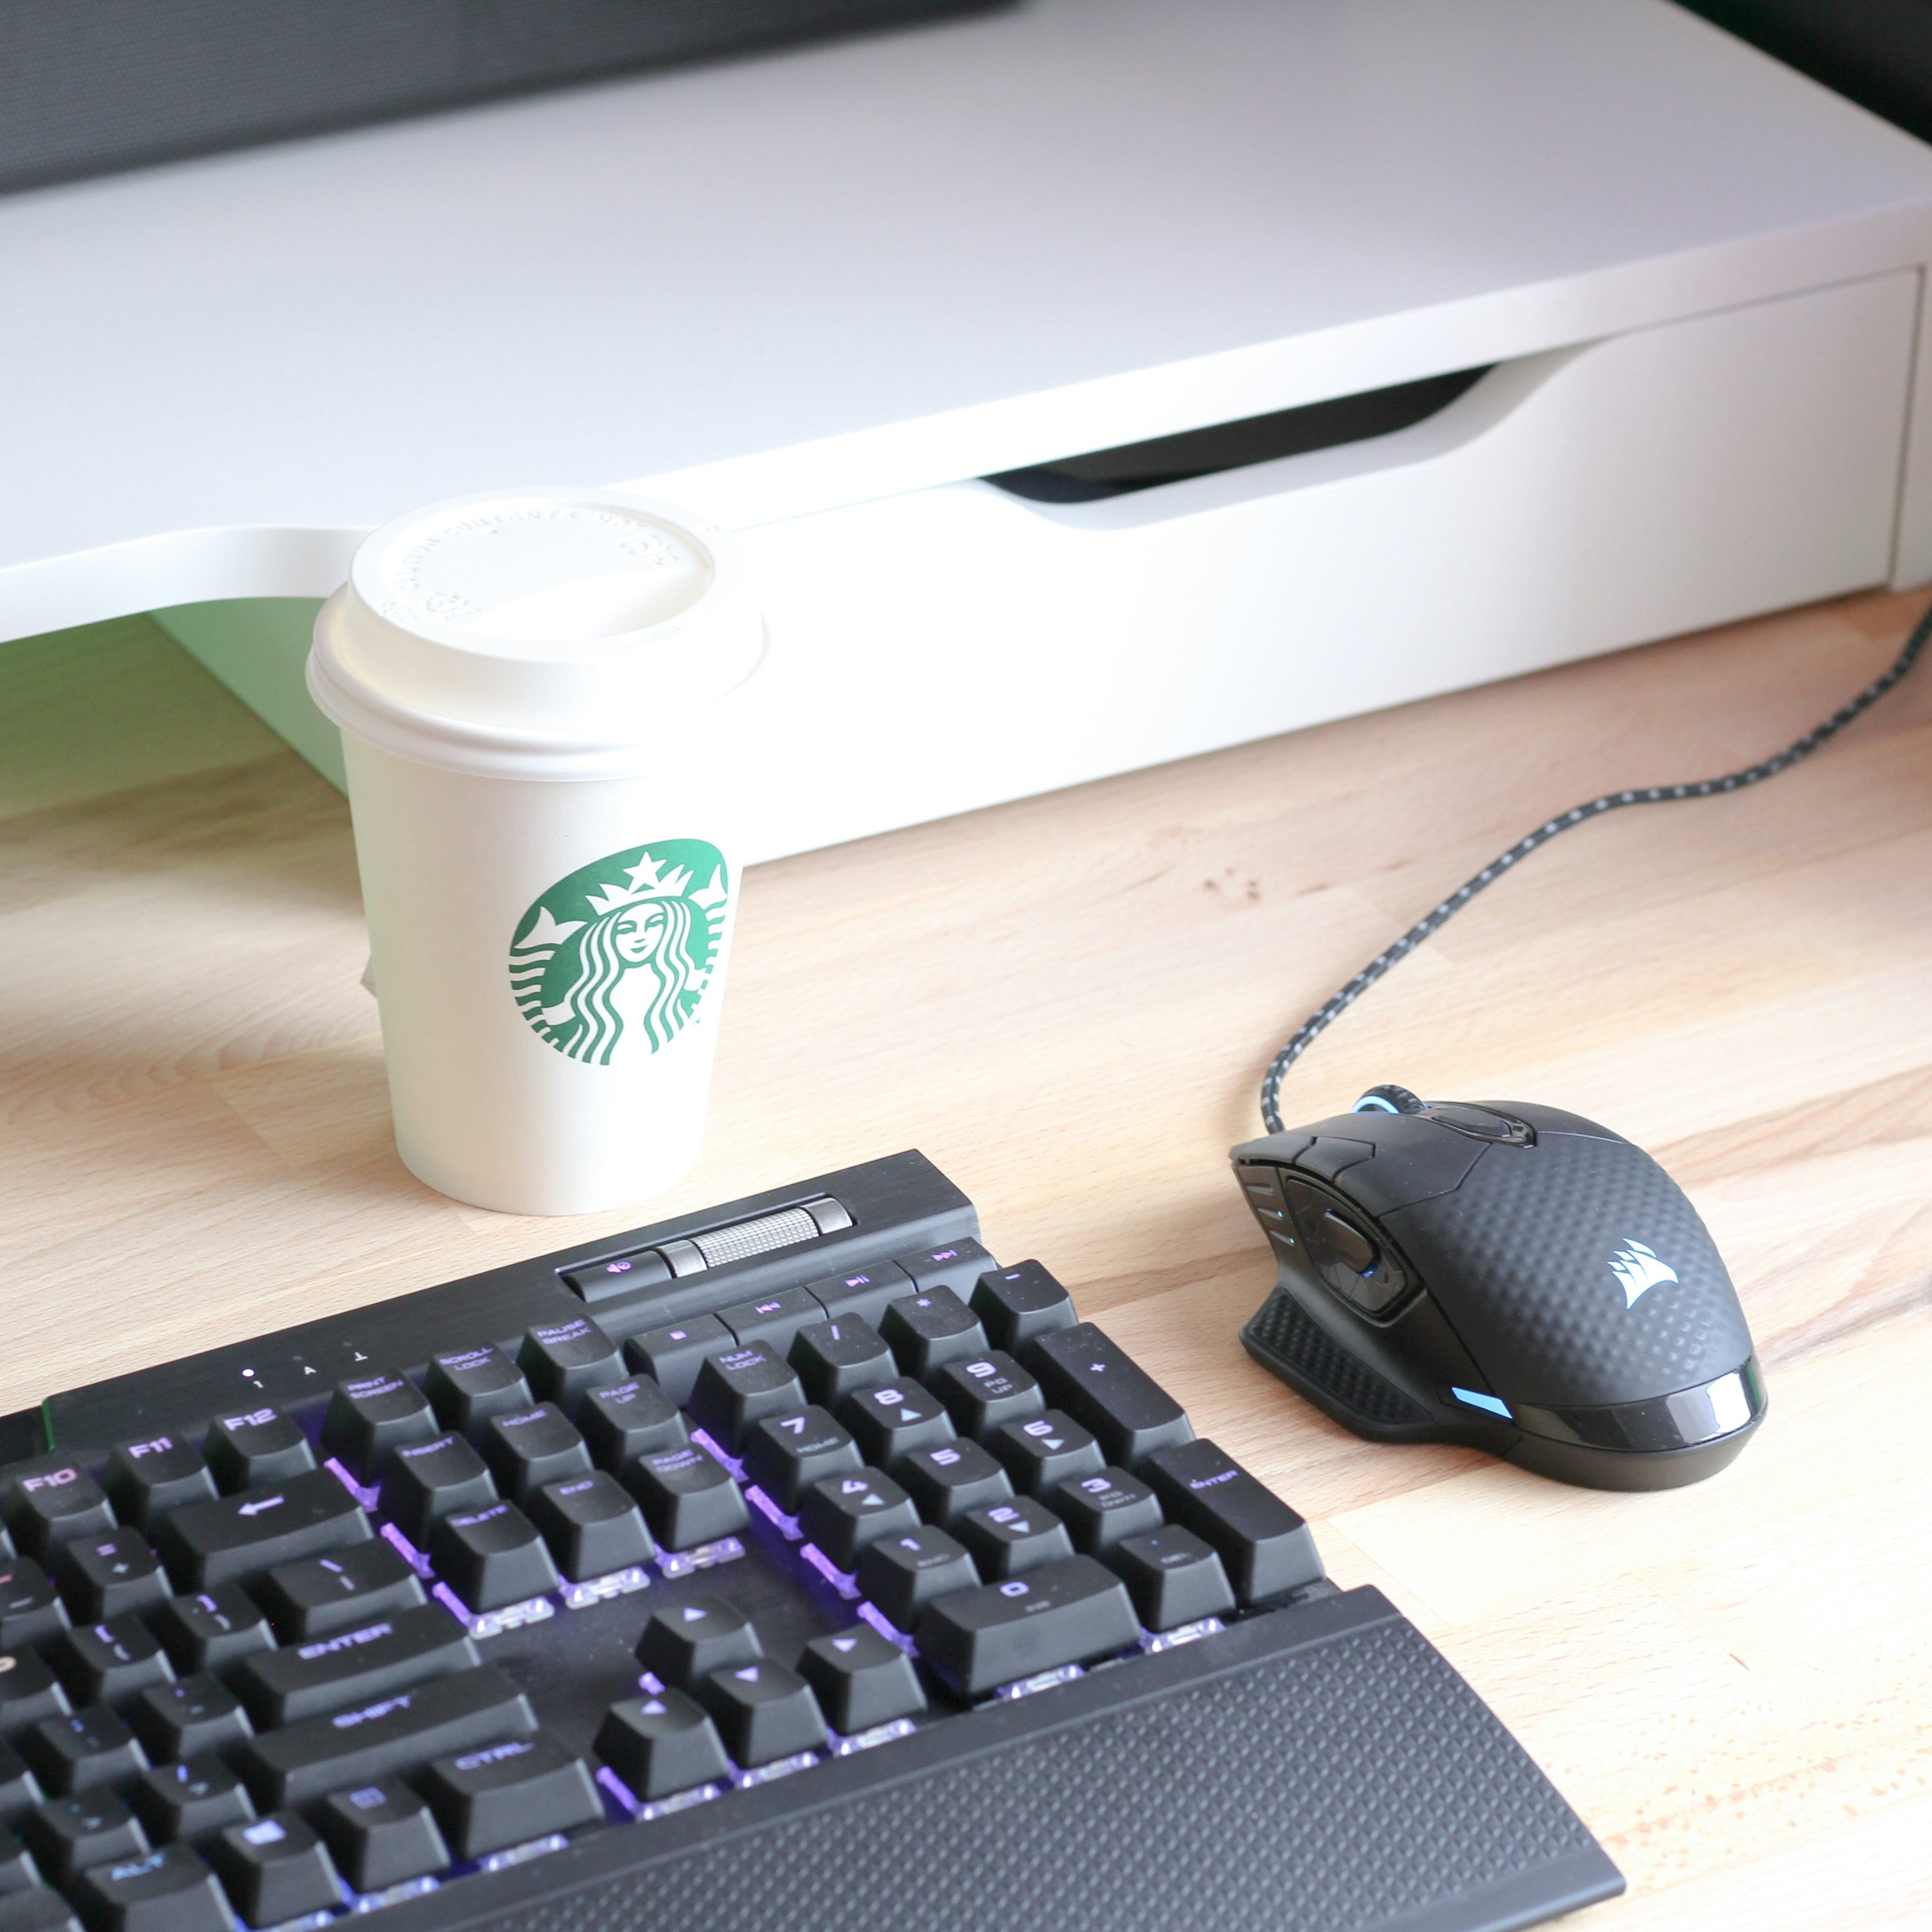 tastiera nera del computer accanto alla tazza usa e getta bianca e verde